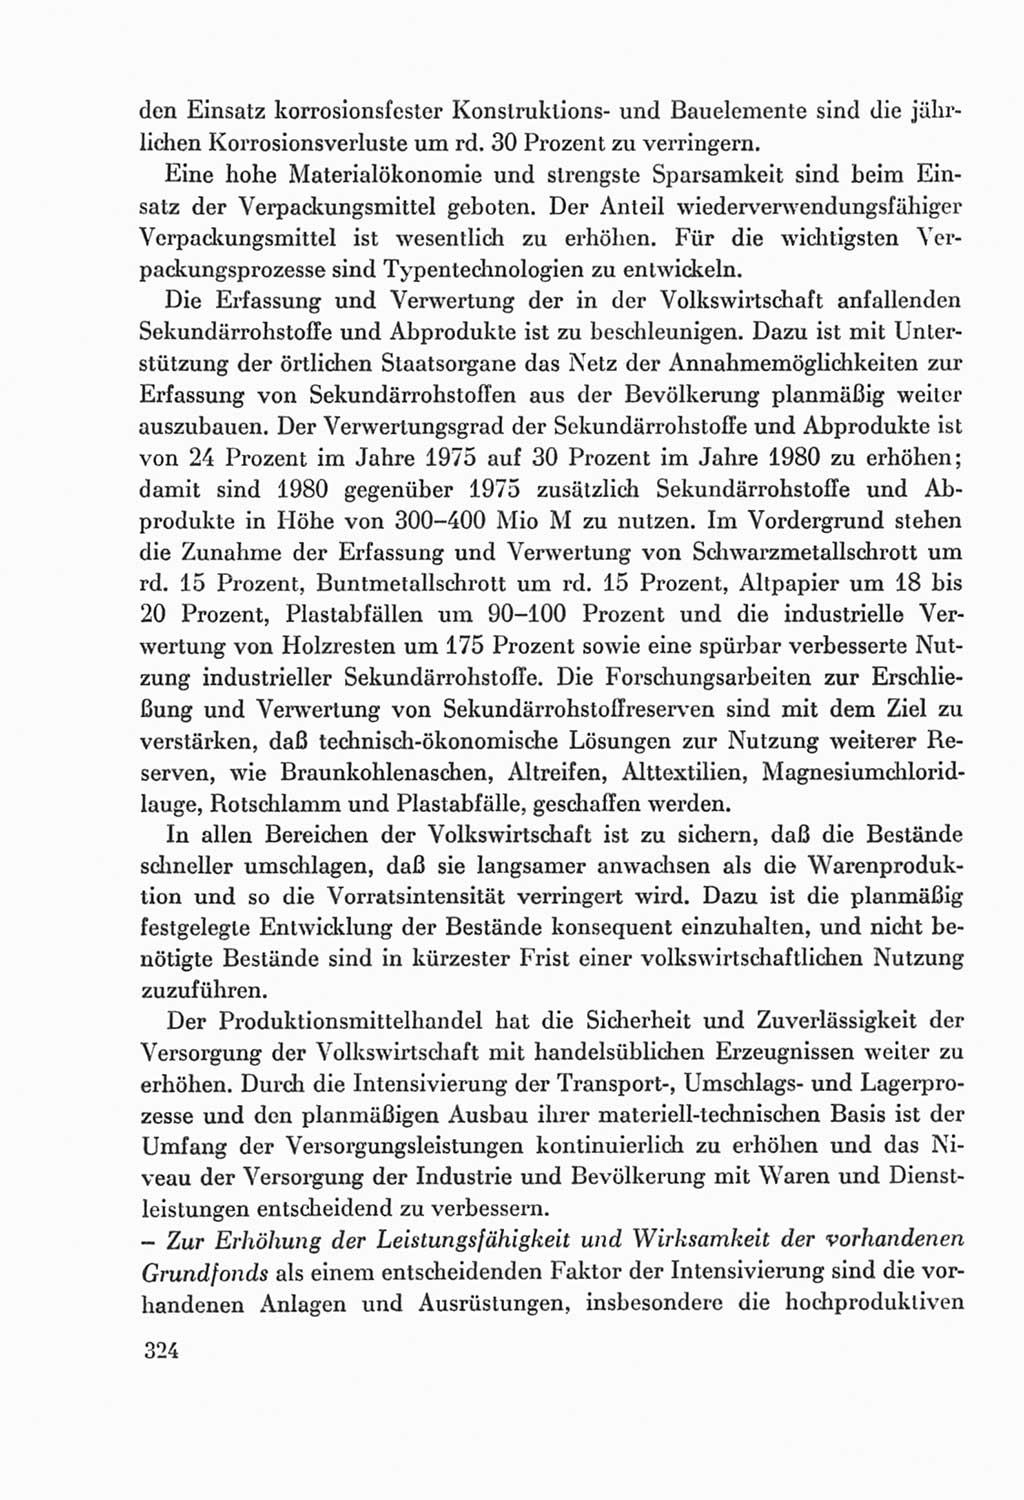 Protokoll der Verhandlungen des Ⅸ. Parteitages der Sozialistischen Einheitspartei Deutschlands (SED) [Deutsche Demokratische Republik (DDR)] 1976, Band 2, Seite 324 (Prot. Verh. Ⅸ. PT SED DDR 1976, Bd. 2, S. 324)